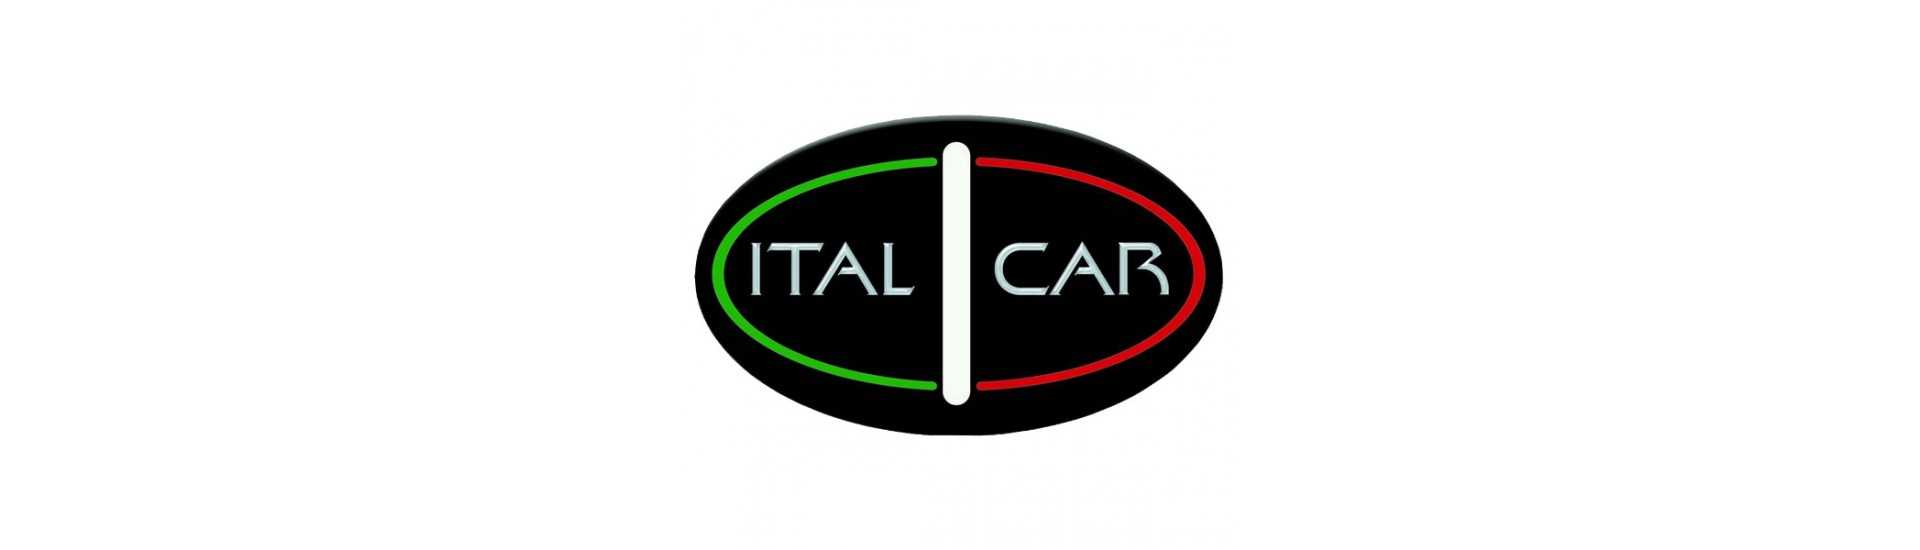 triángulo frontal al mejor precio para coche sin un permiso Italcar